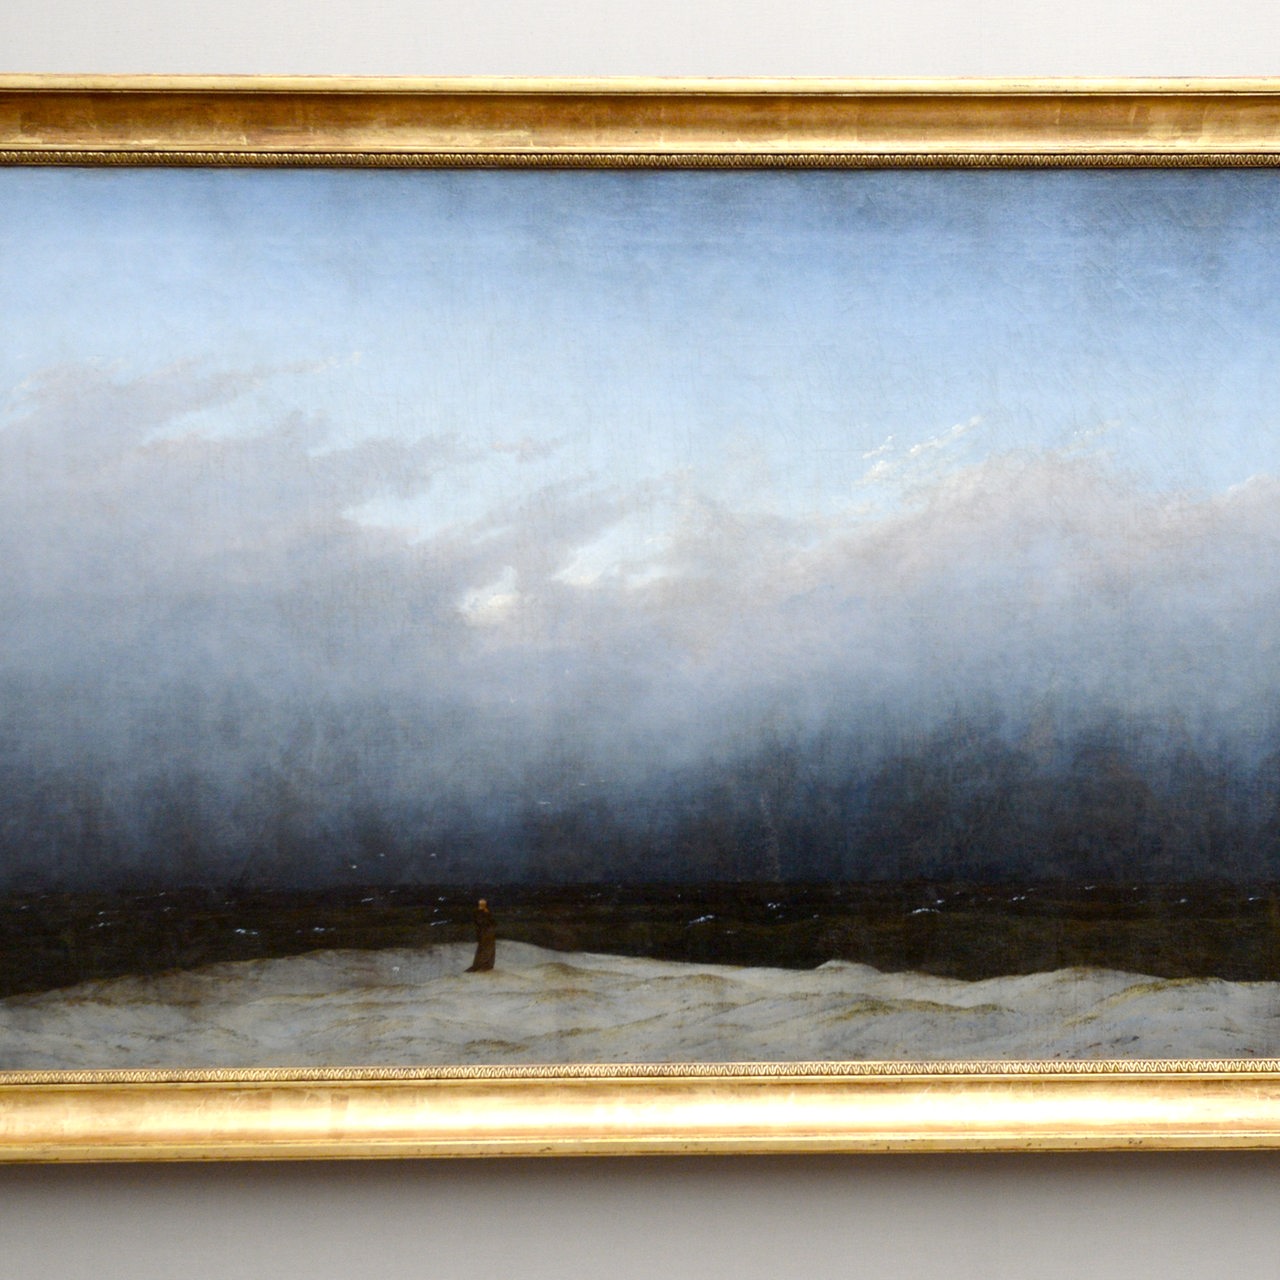 Gemälde: Caspar David Friedrich, "Der Mönch am Meer" (Wanderer am Gestade des Meeres), um 1808/10. Öl auf Leinwand